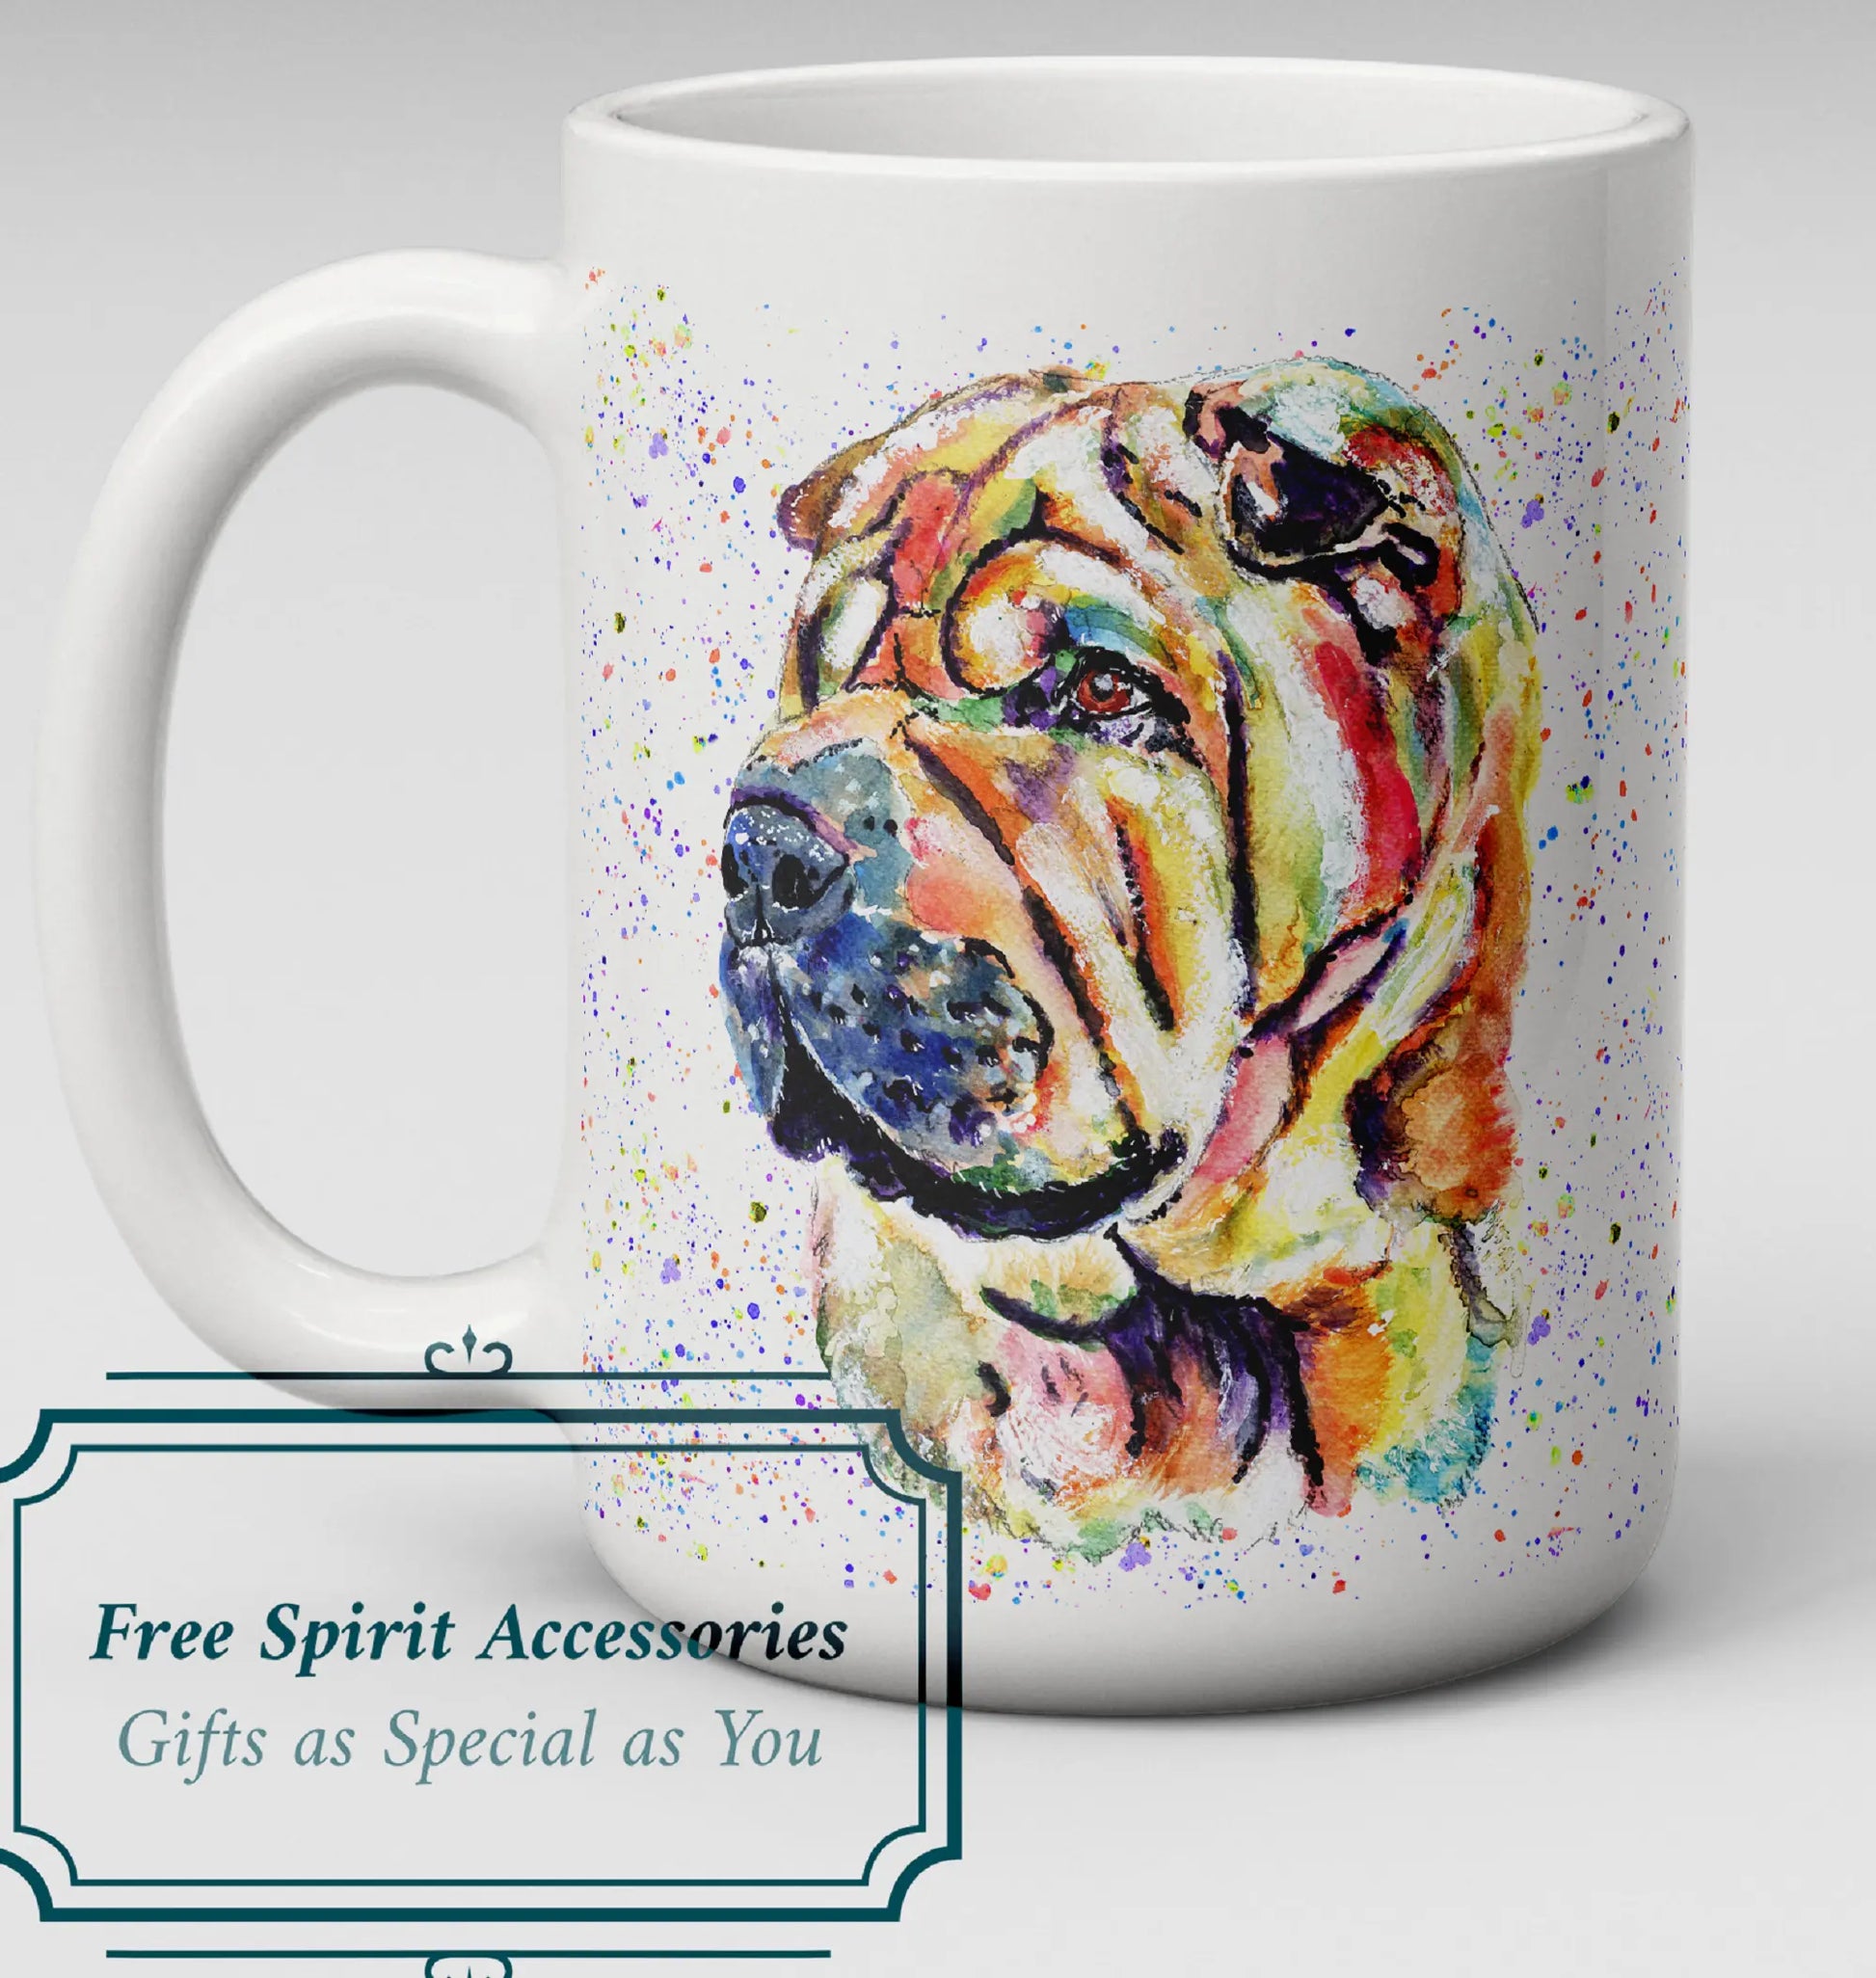  Rainbow Sharpei Dog Mug by Free Spirit Accessories sold by Free Spirit Accessories